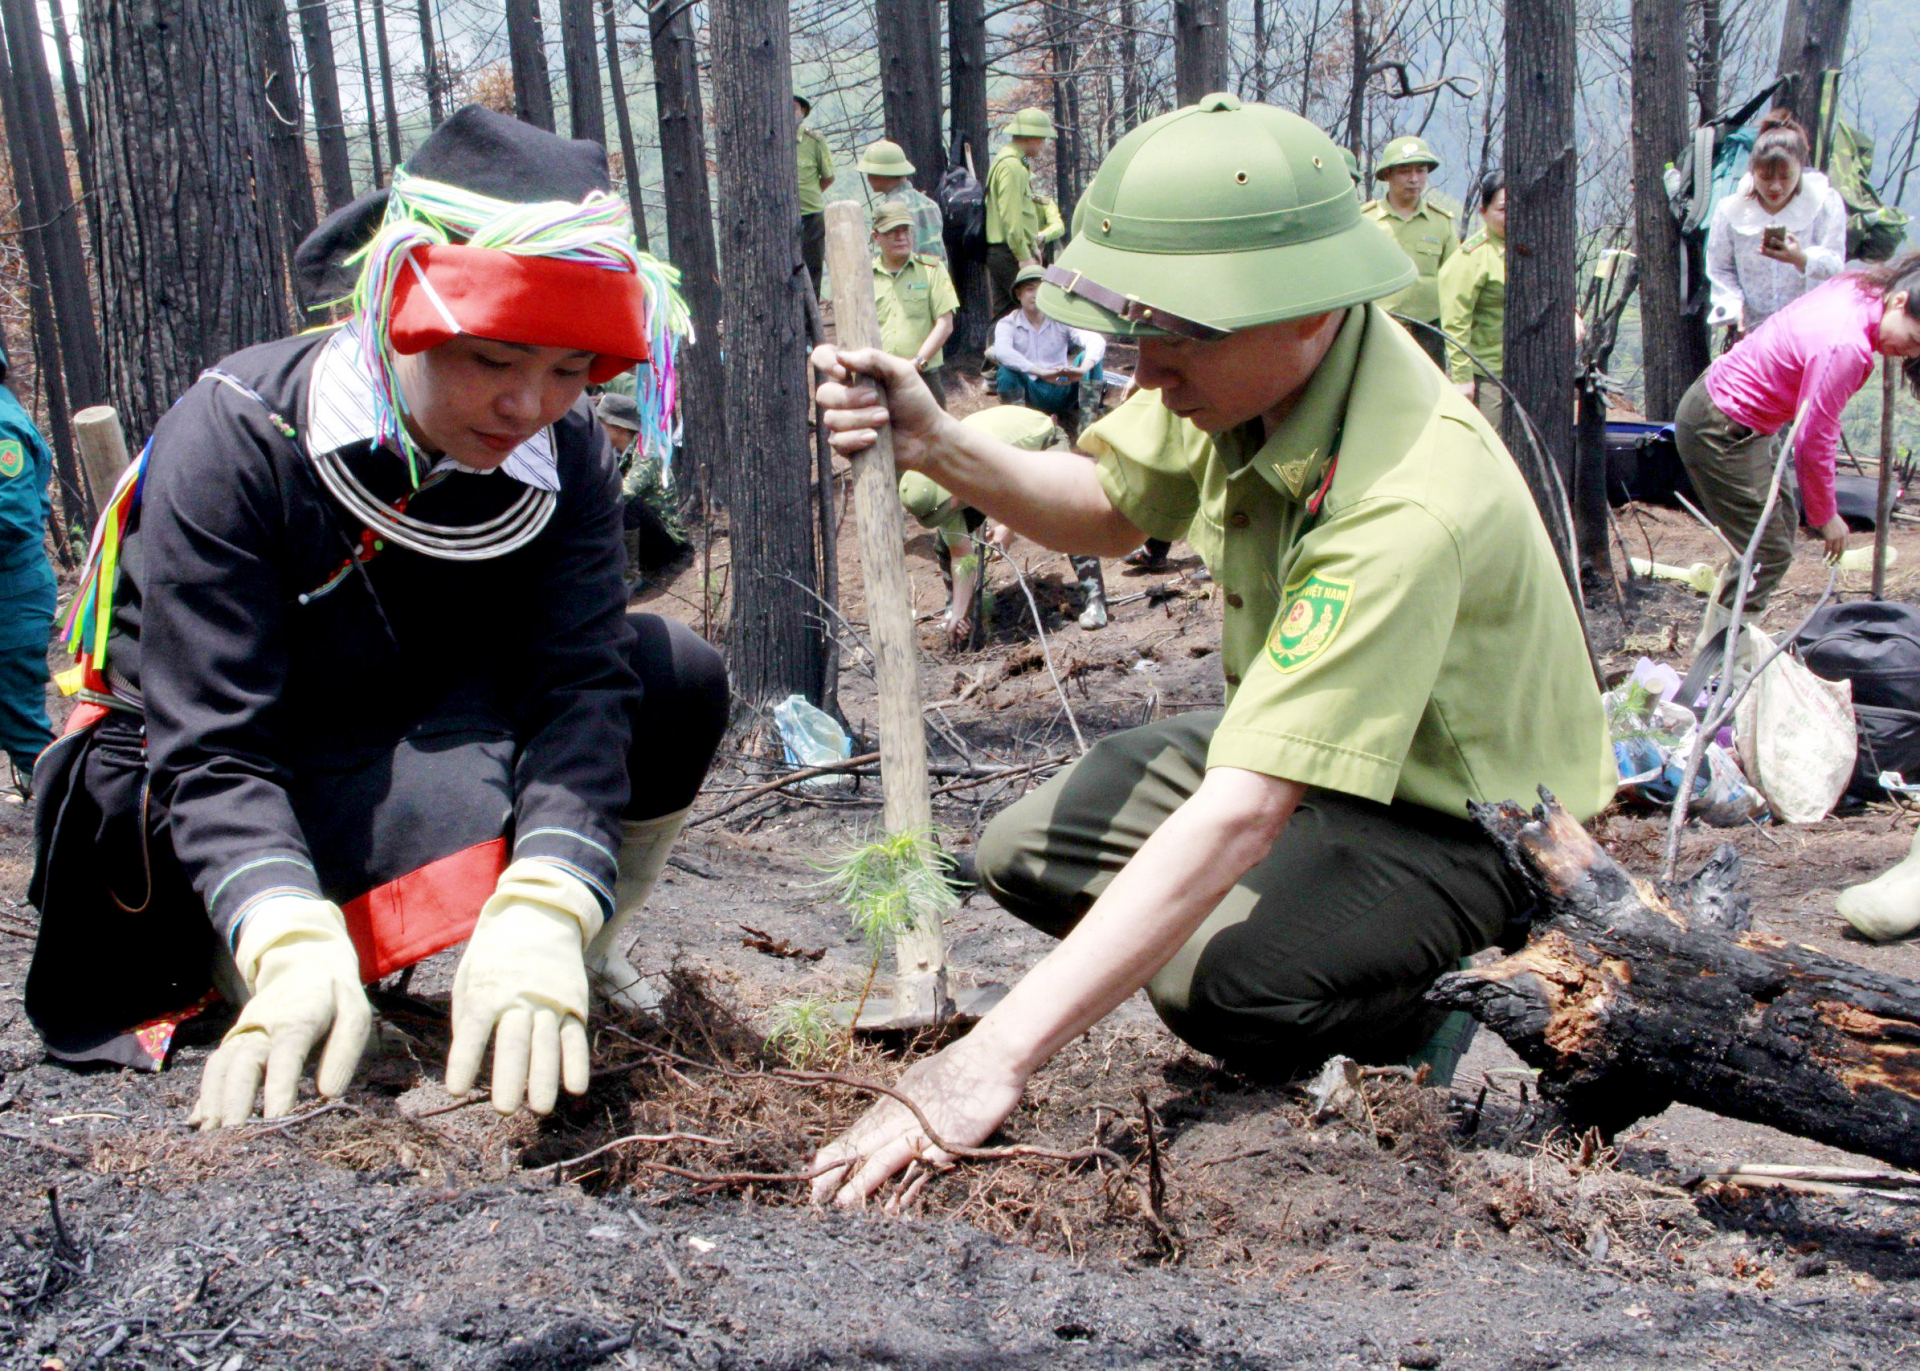 Cán bộ Chi cục Kiểm lâm tỉnh và người dân xã Phương Tiến (Vị Xuyên) trồng rừng trên đỉnh 2000, nơi 2 cán bộ kiểm lâm hy sinh khi thực hiện nhiệm vụ chữa cháy rừng.
